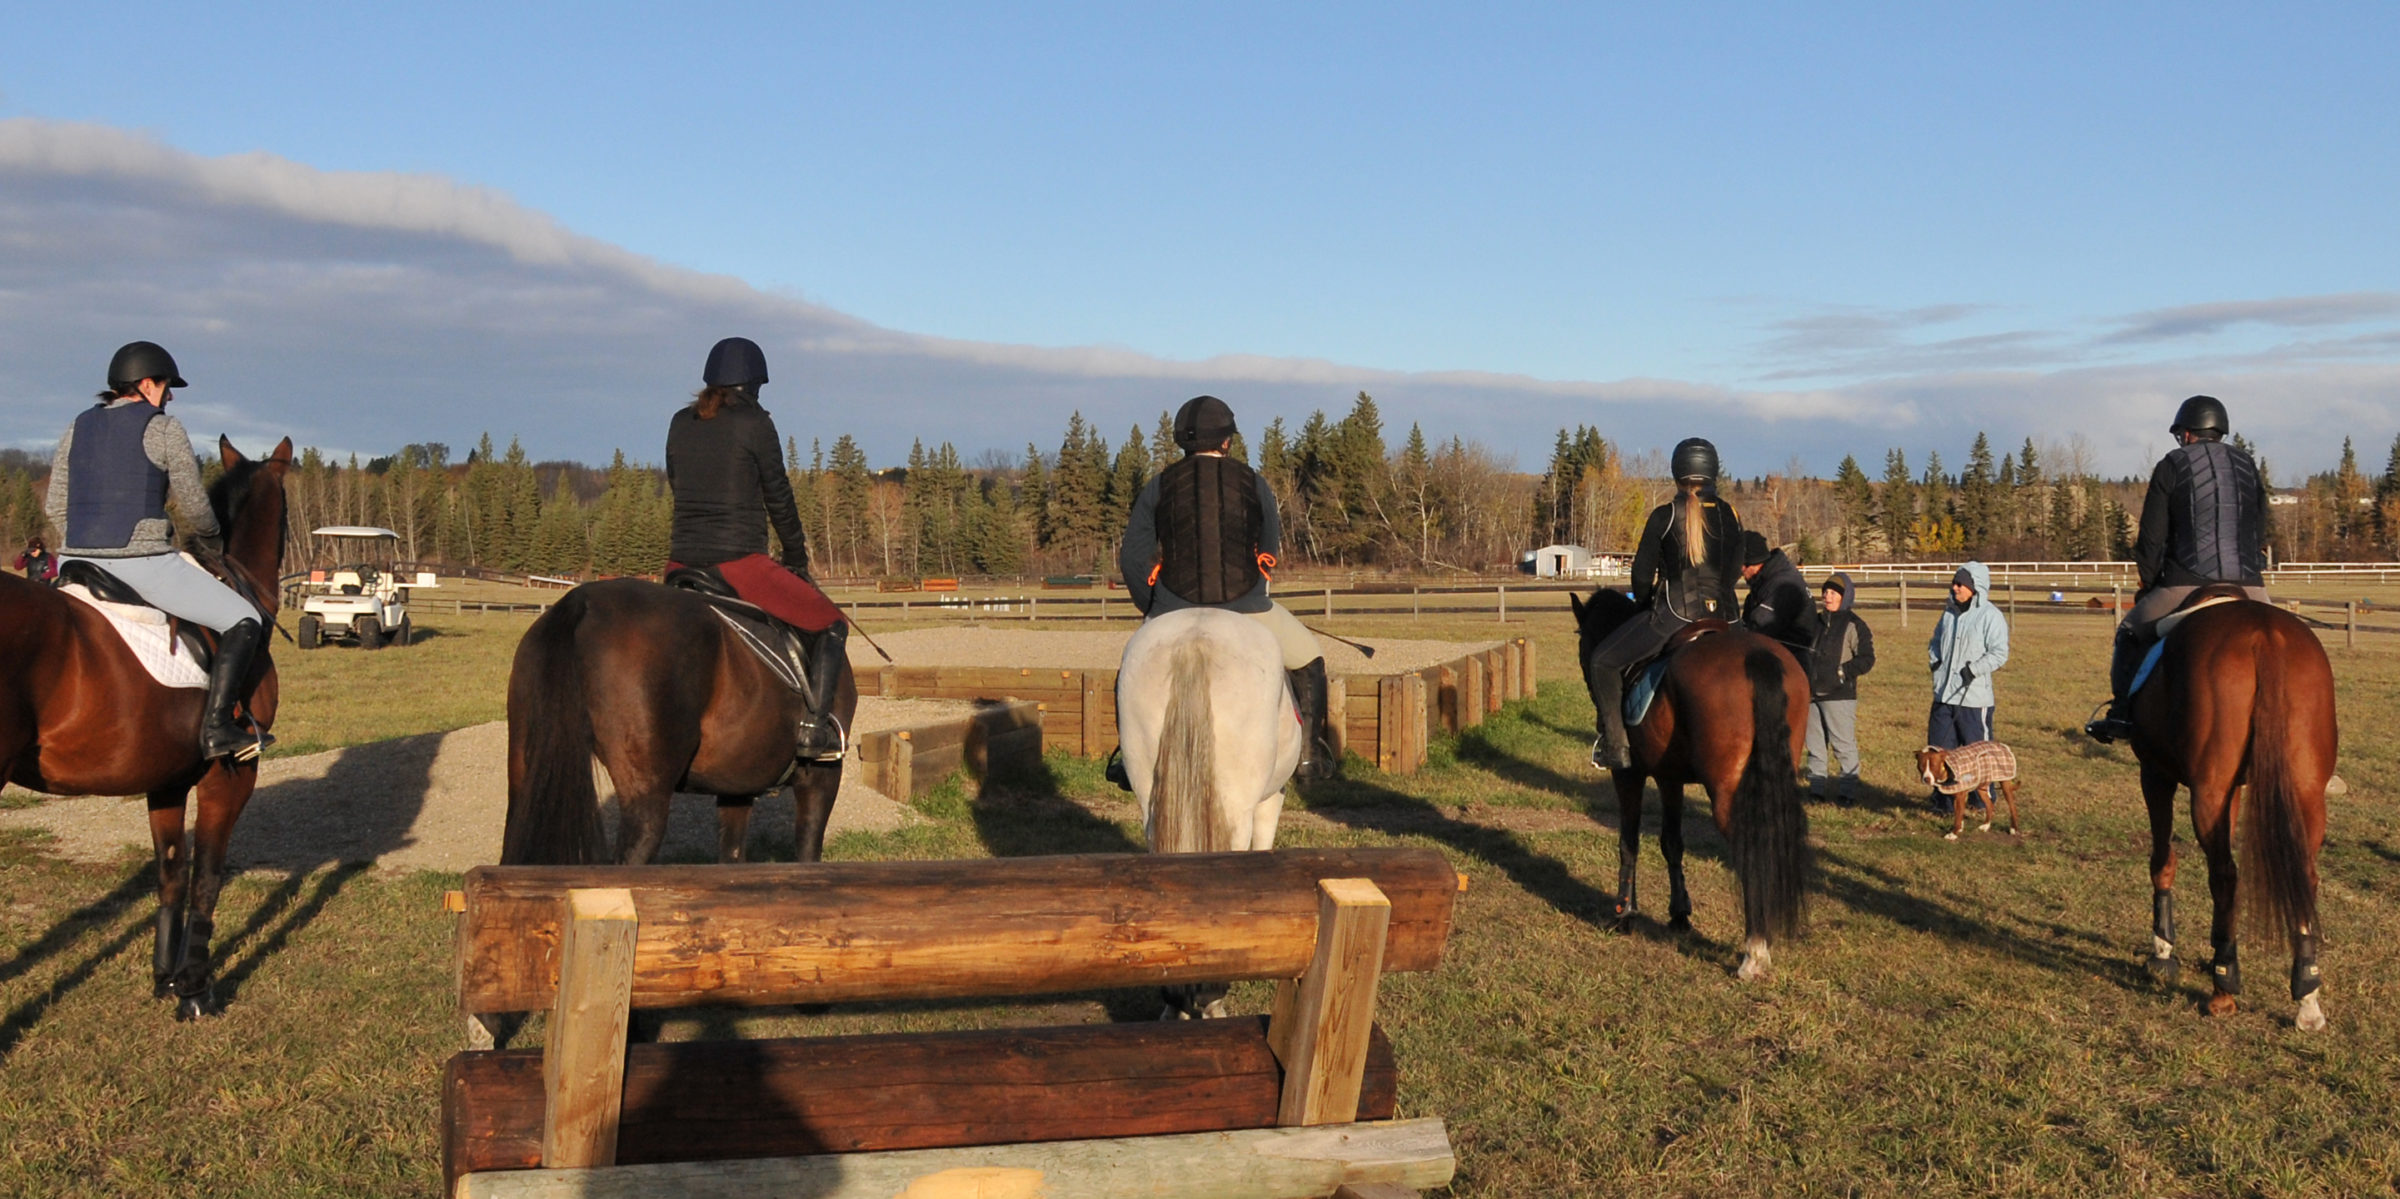 Alberta Horse Trials Association